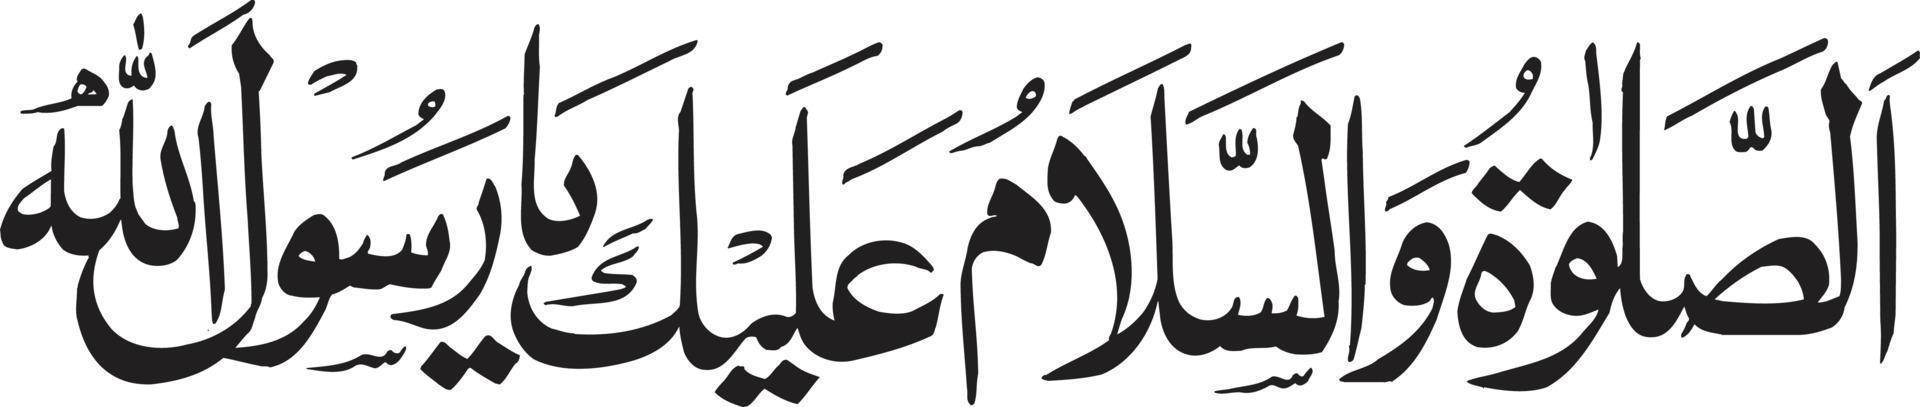 slaam islamische arabische kalligrafie kostenloser vektor